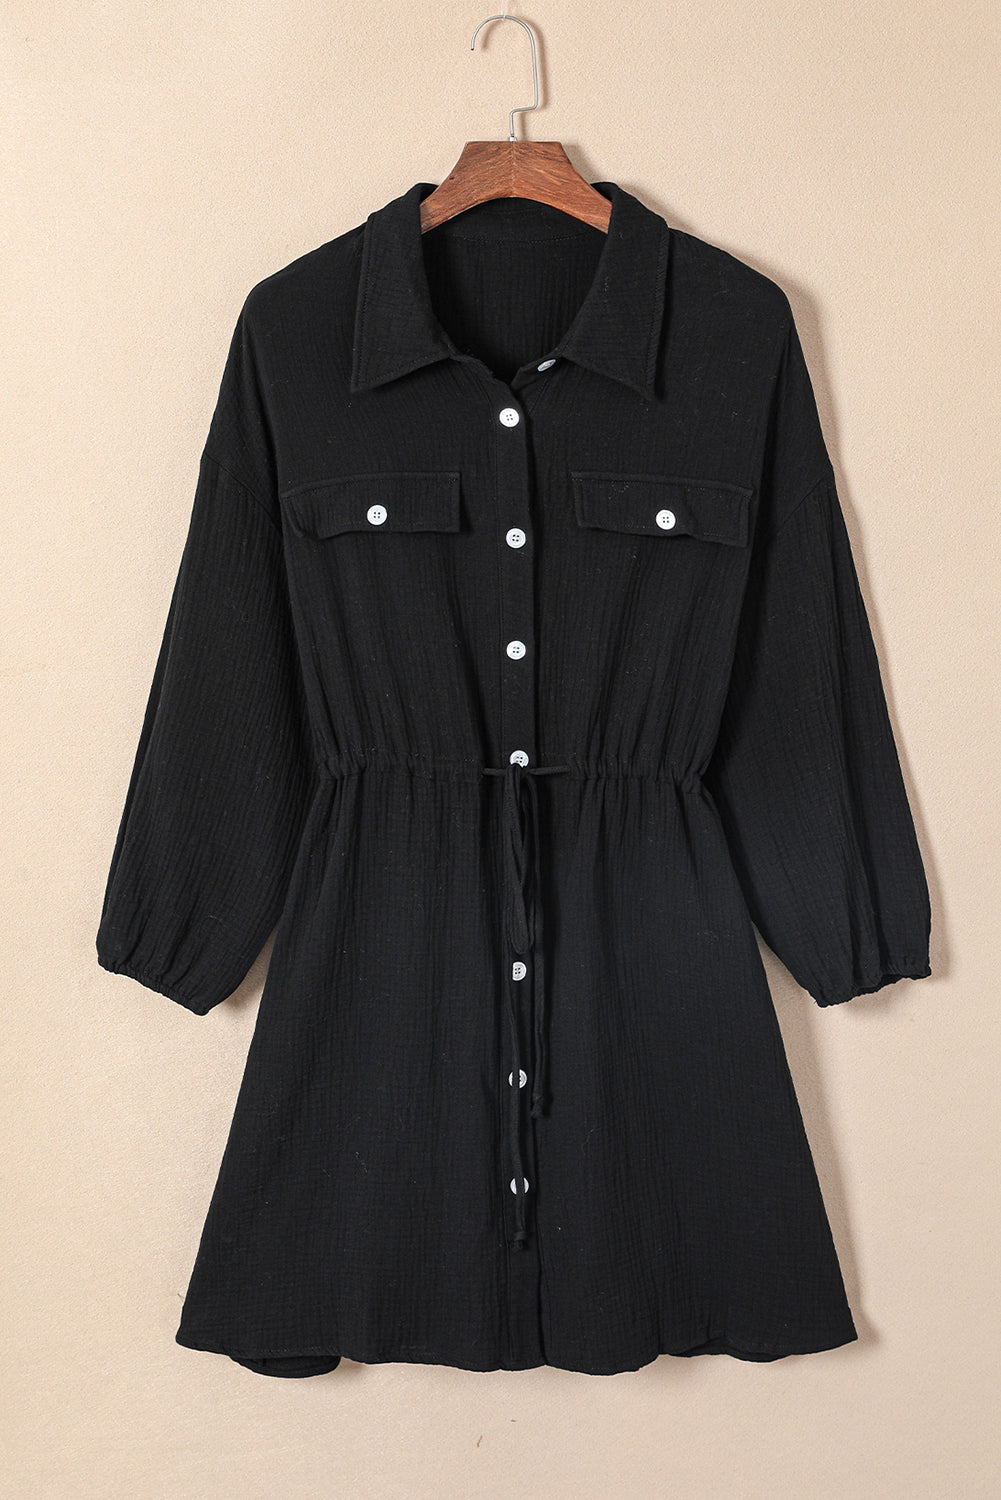 Crna haljina-košulja s teksturom na kopčanje veće veličine